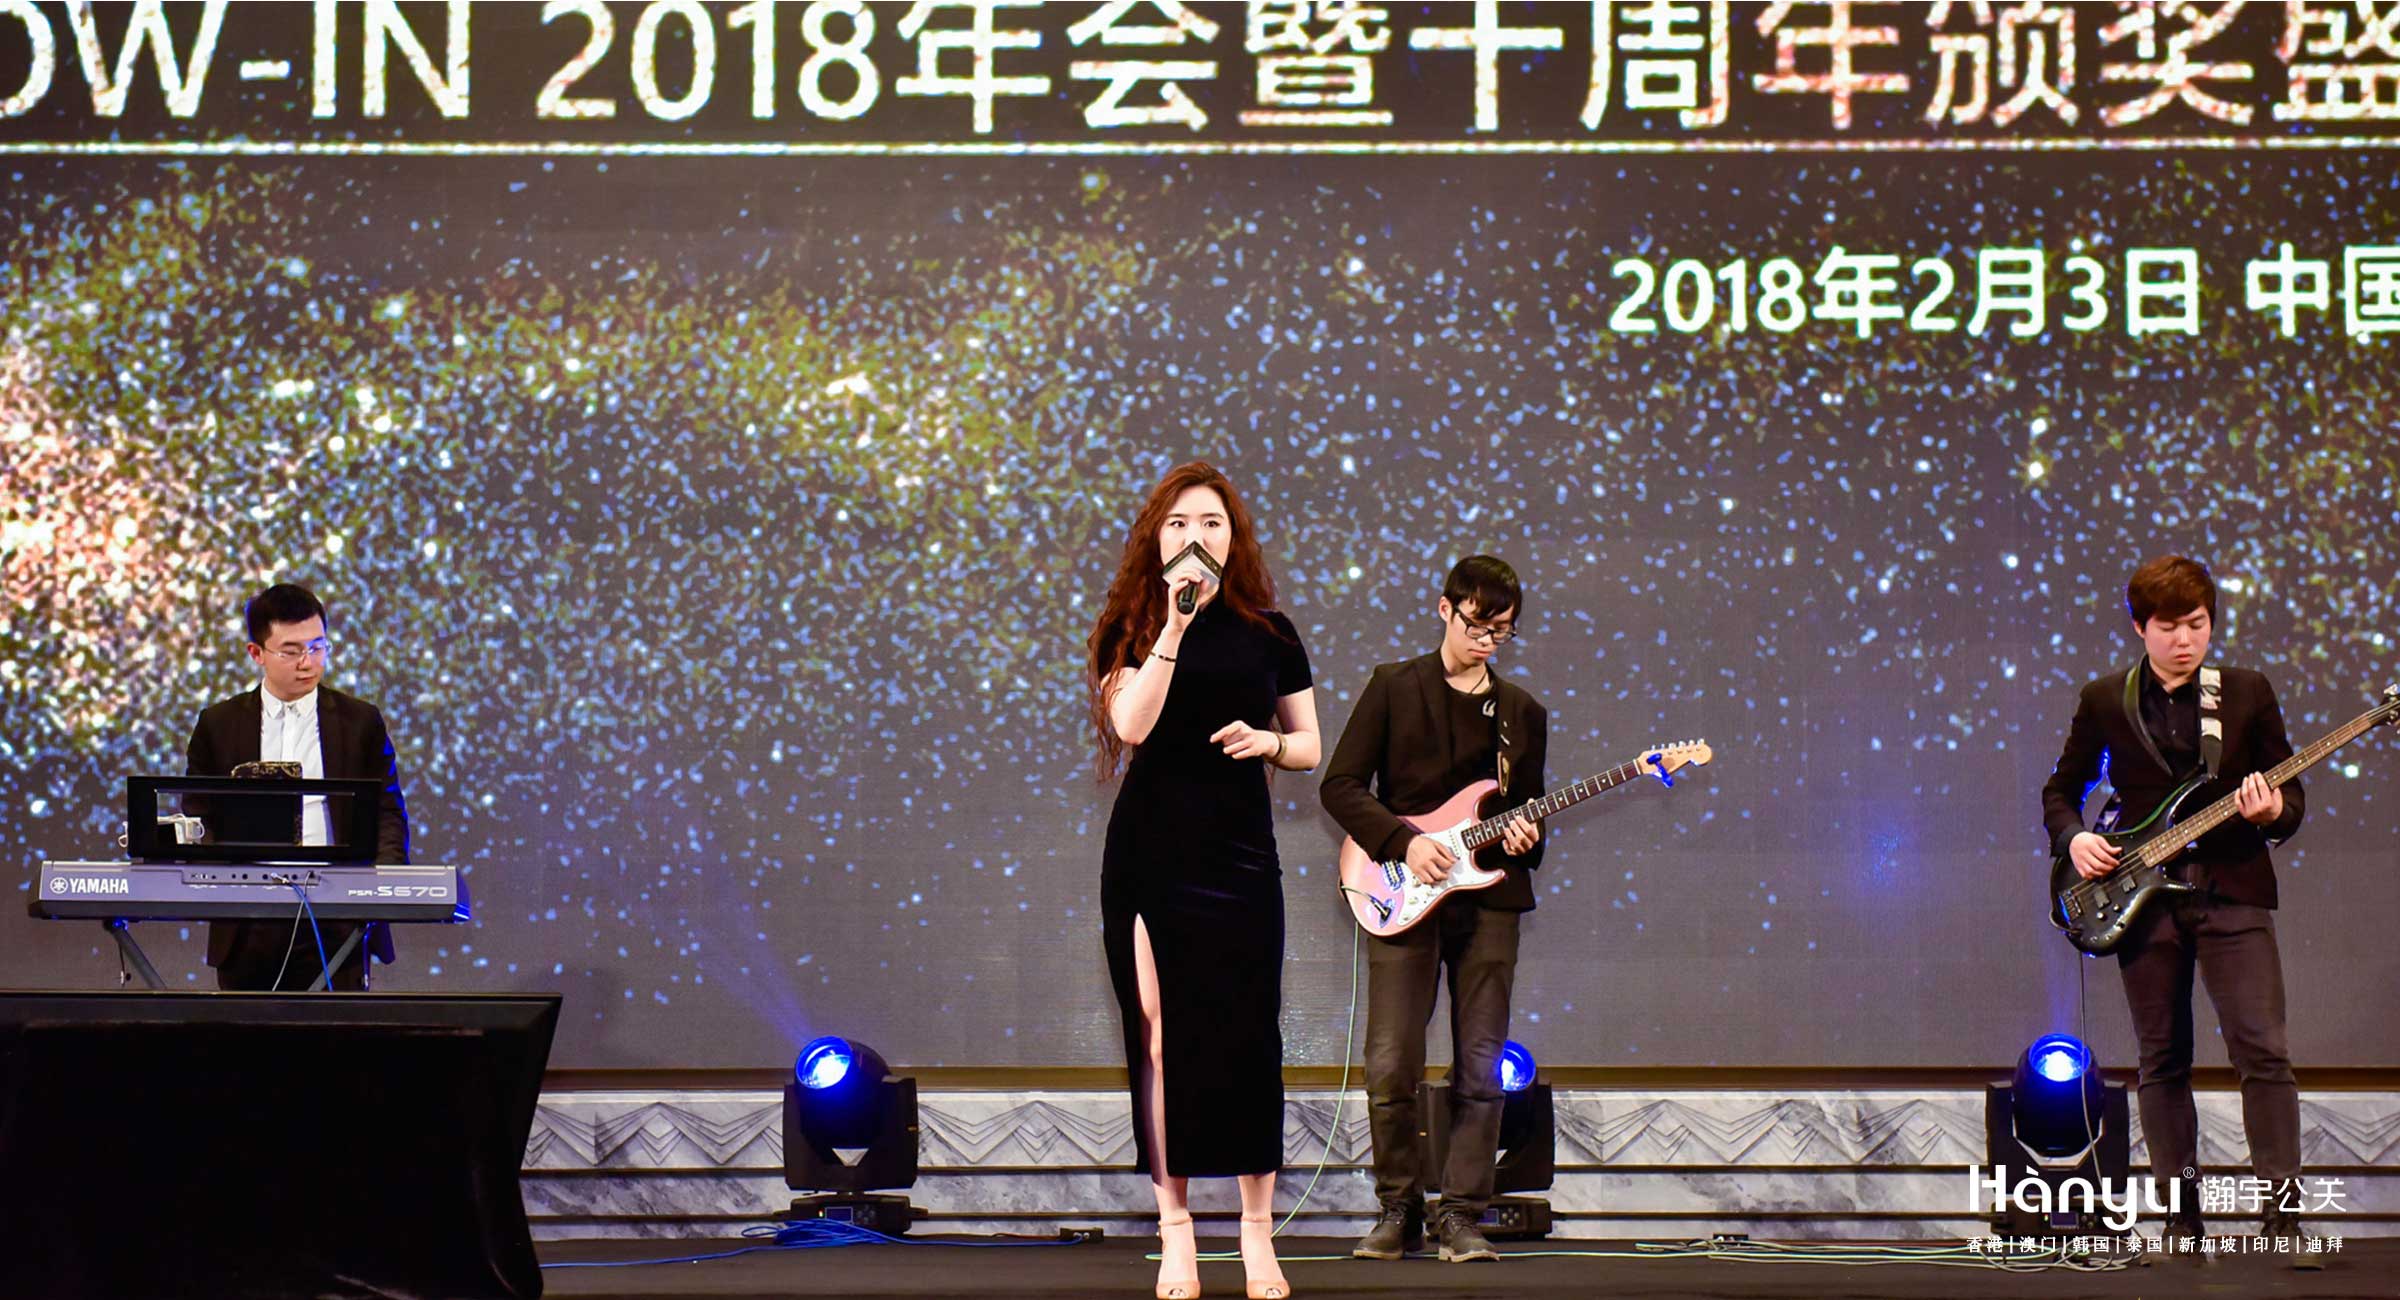 SHOW-IN 2018年会暨十周年颁奖盛典